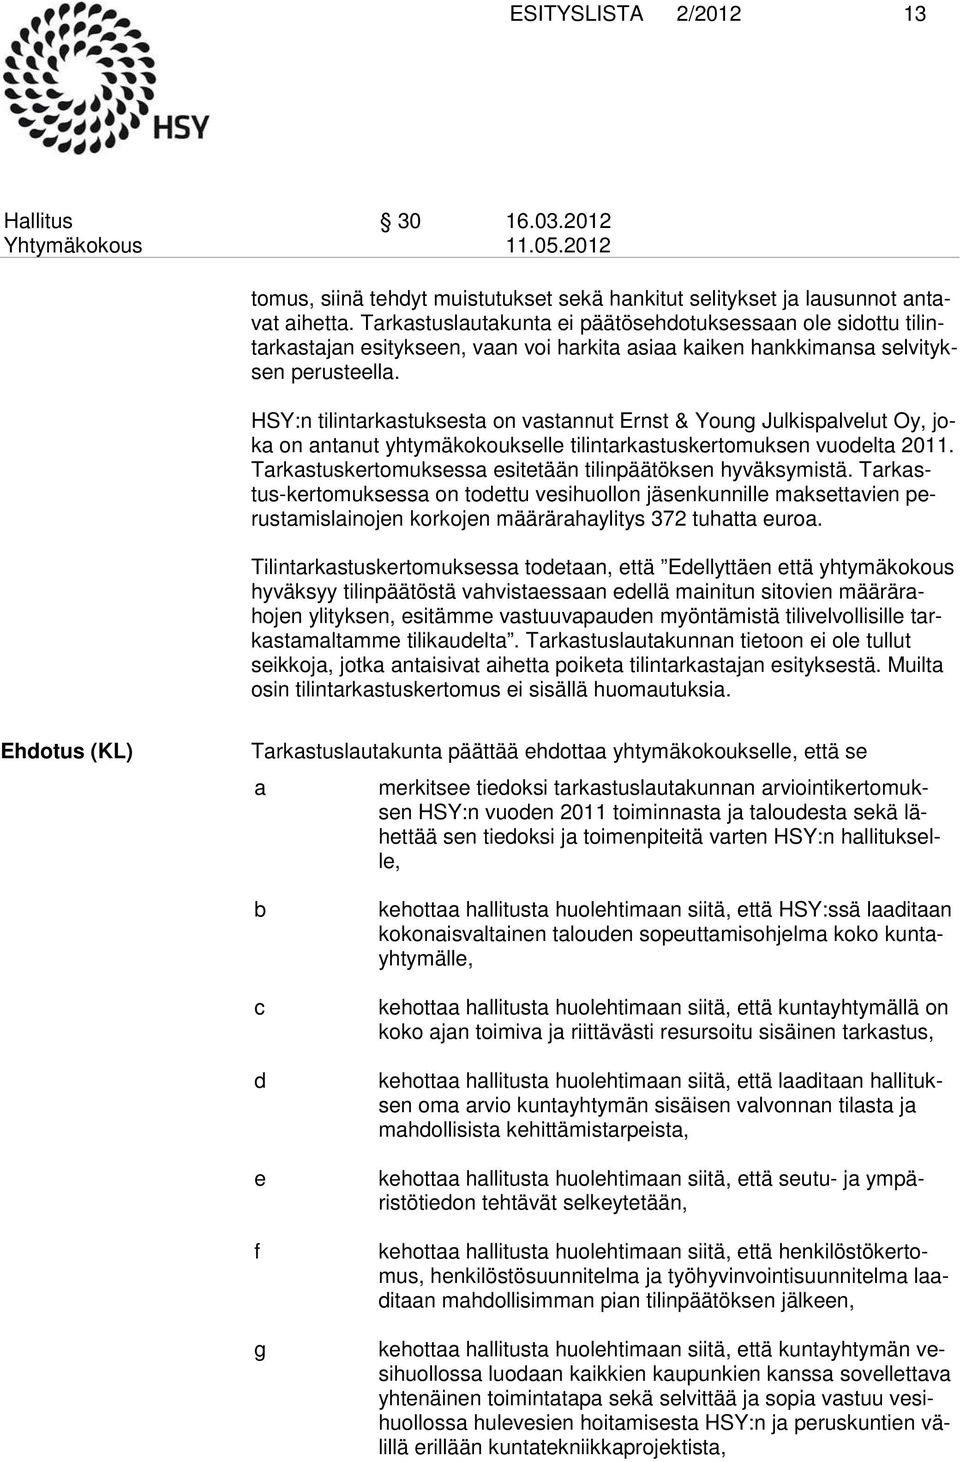 HSY:n tilintarkastuksesta on vastannut Ernst & Young Julkispalvelut Oy, joka on antanut yhtymäkokoukselle tilintarkastuskertomuksen vuodelta 2011.